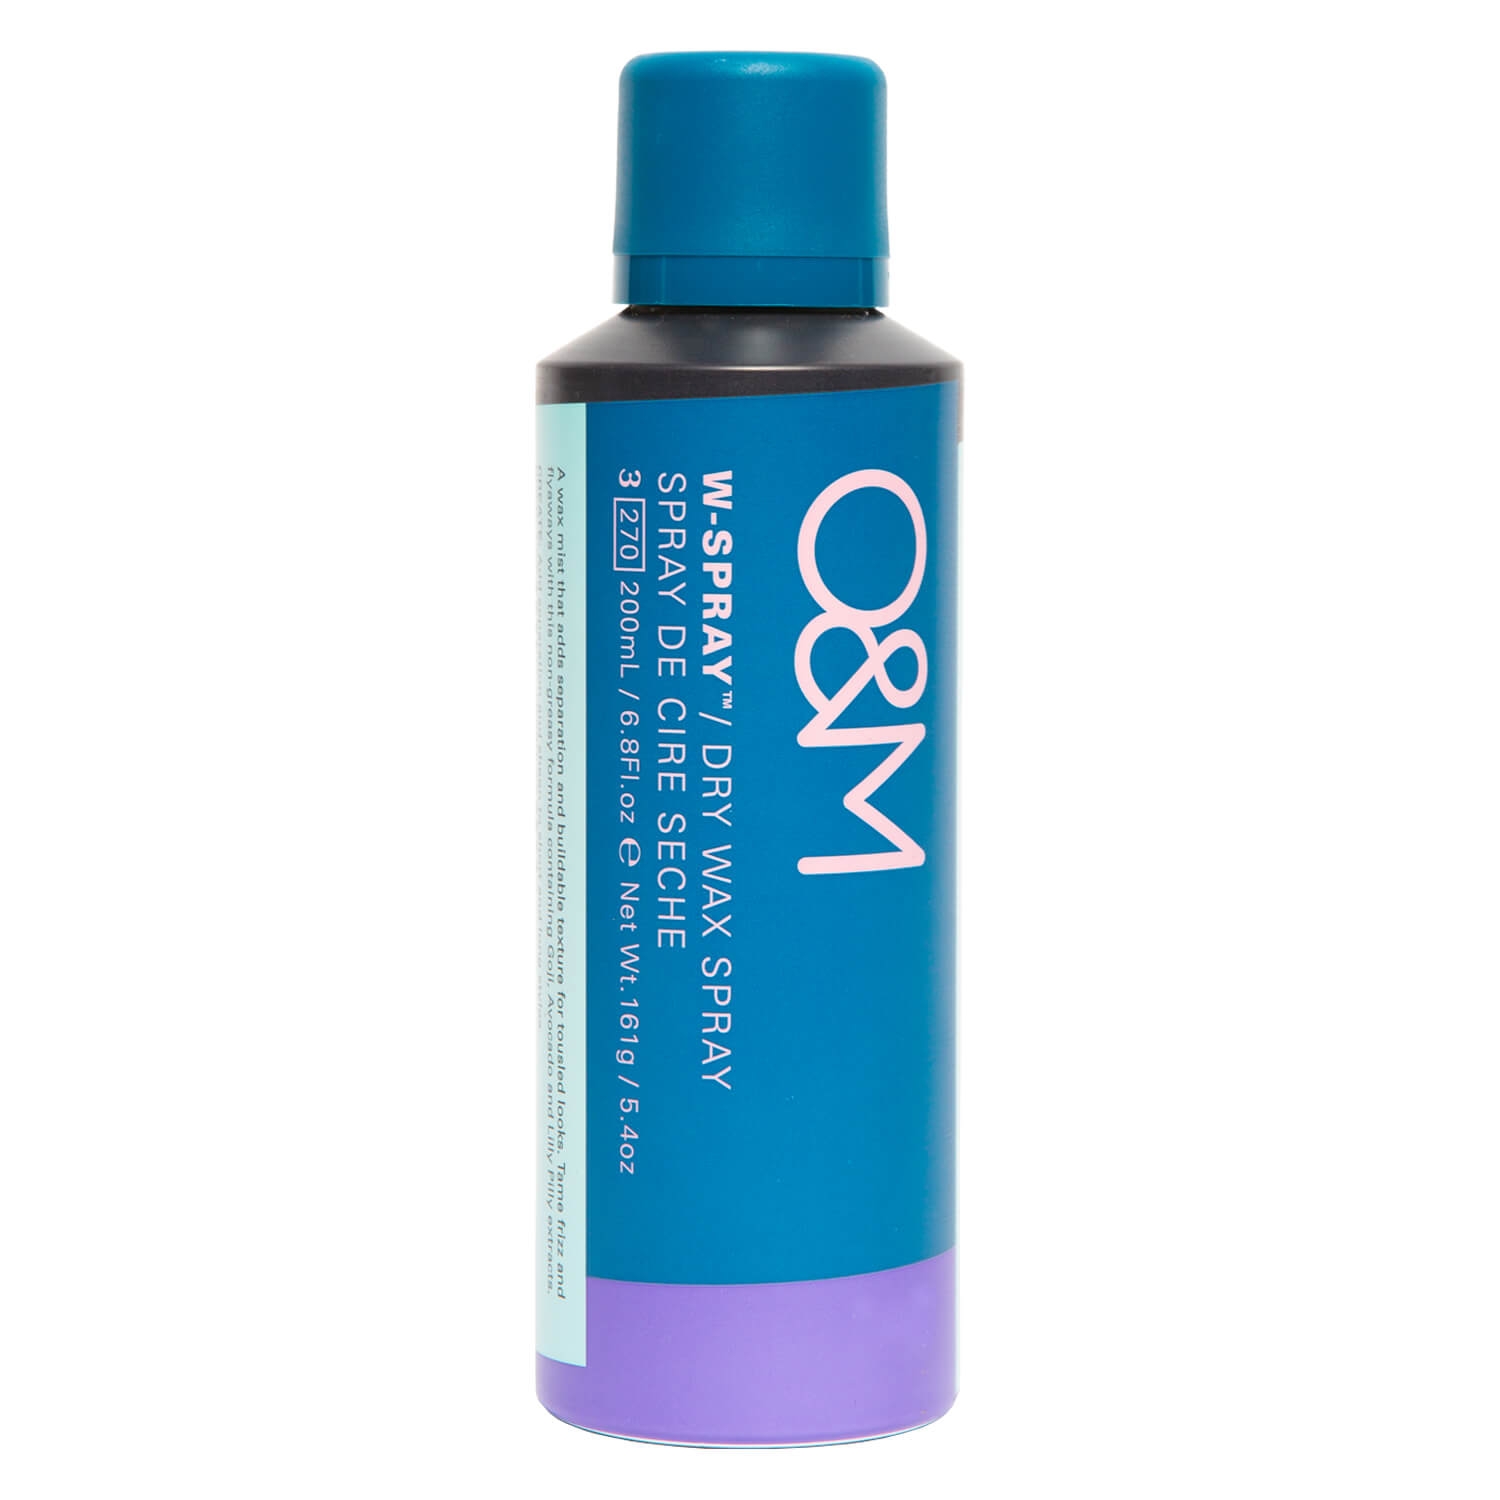 Produktbild von O&M Styling - W-Spray Dry Wax Spray